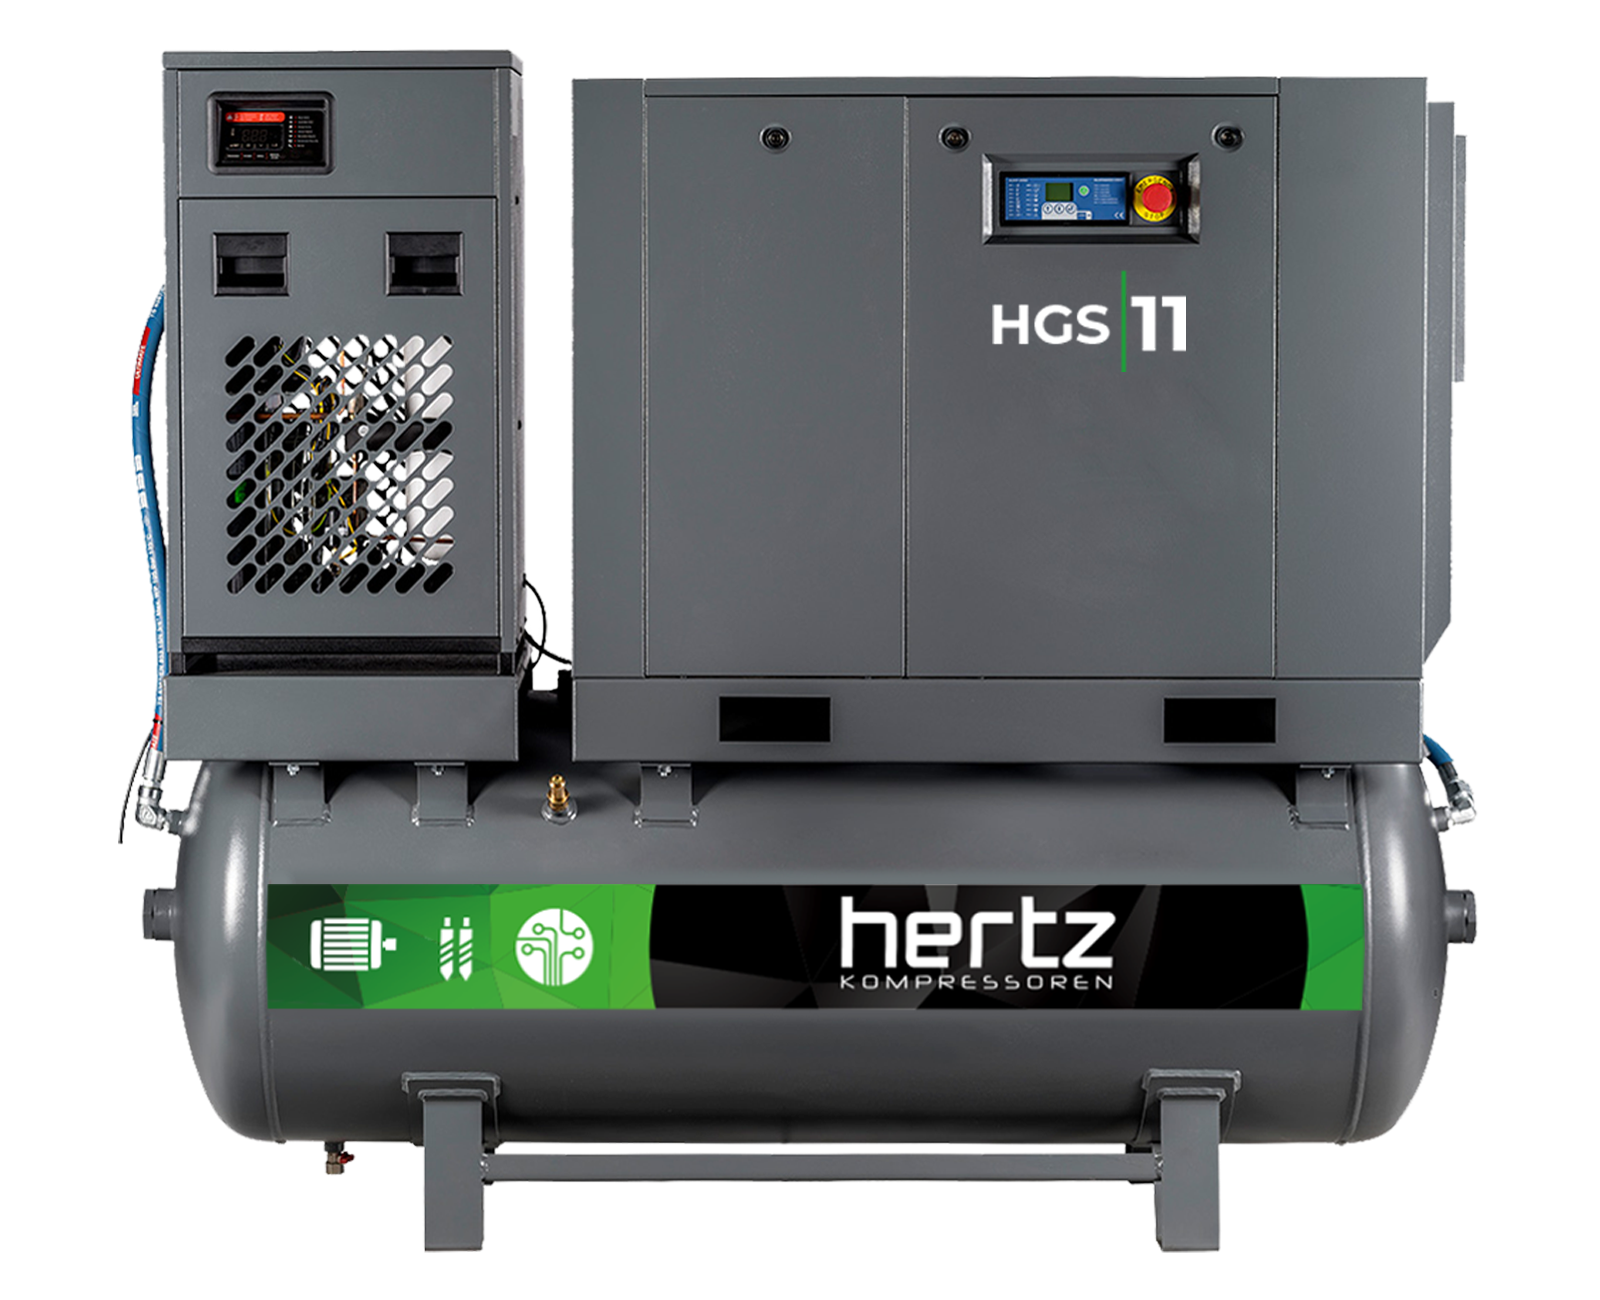 HGS-HSC serijos sraigtiniai kompresoriai